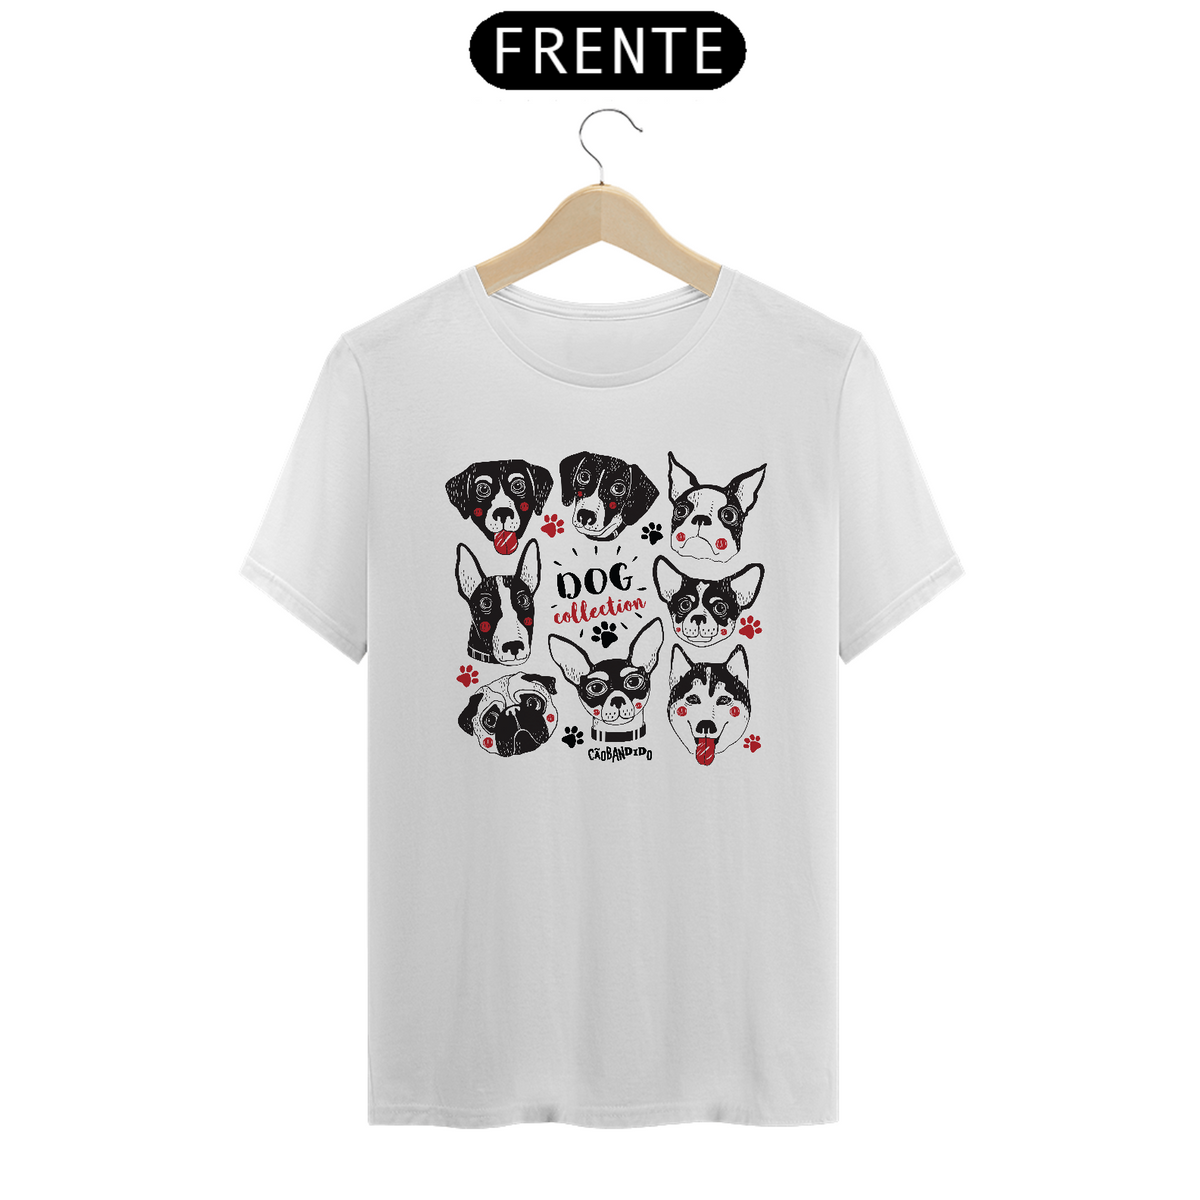 Nome do produto: Camiseta Dog Collection